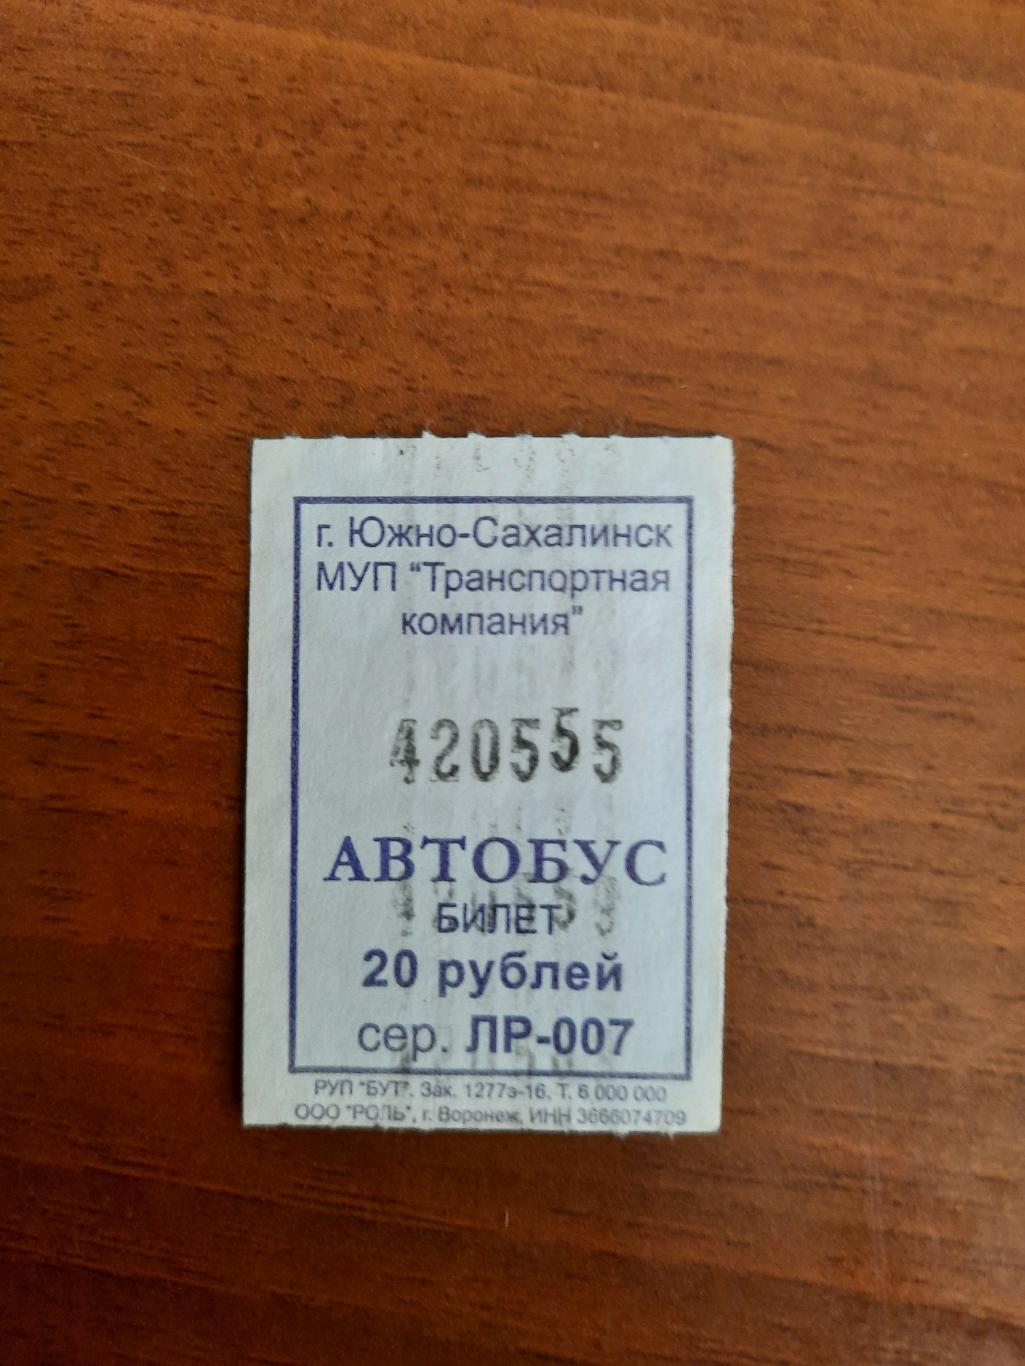 Автобусный билет с интересным номером 420555